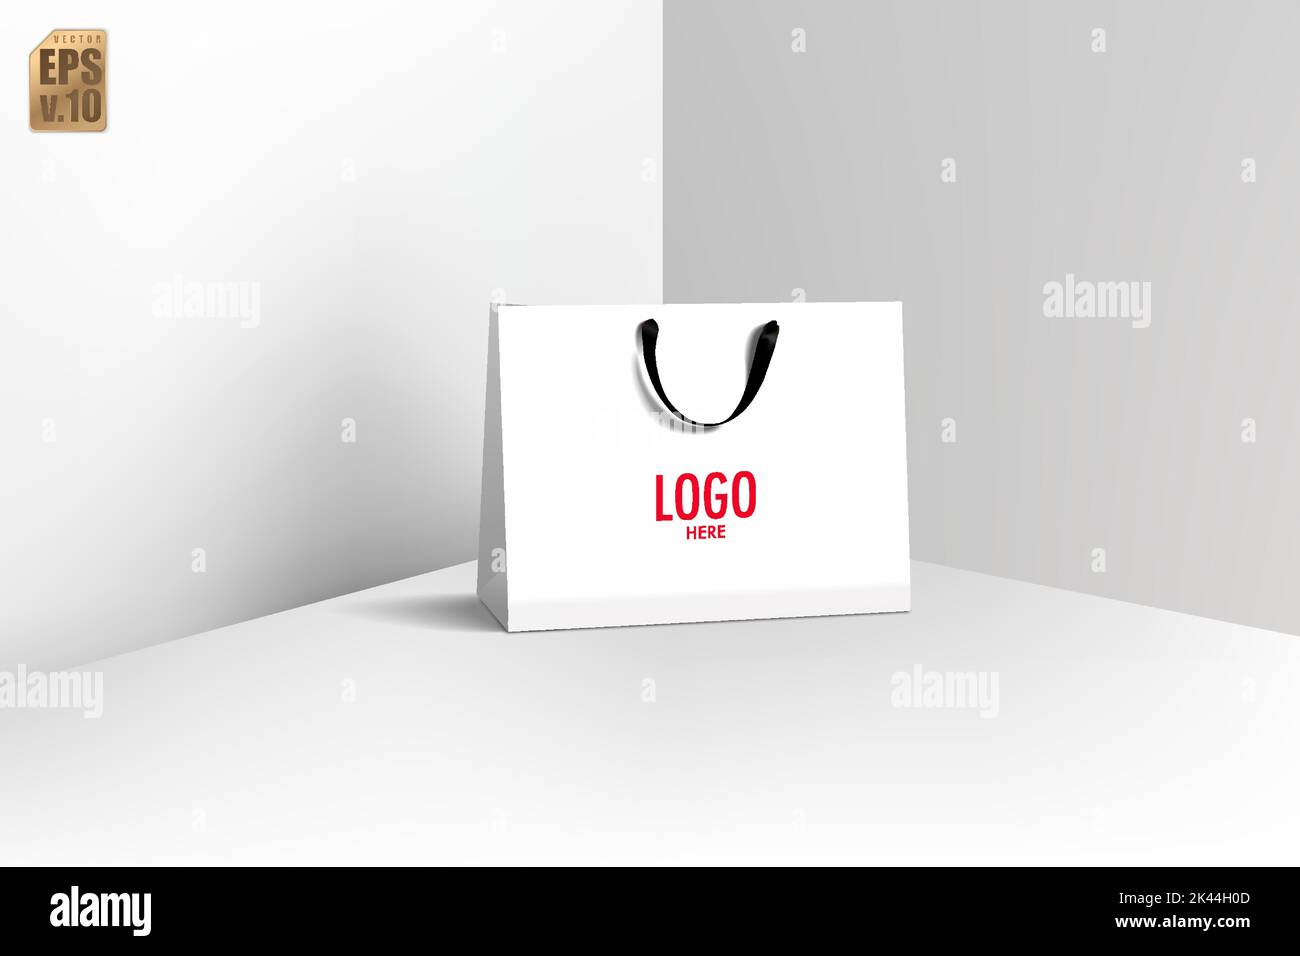 Weiße Papiertüte und schwarzer Griff realistisches Vektor-Design. Leeres Logo zum Einfügen Ihres Branding. Sie können für Online-Marketing, Vertrieb, Präsentationen verwendet werden Stock Vektor